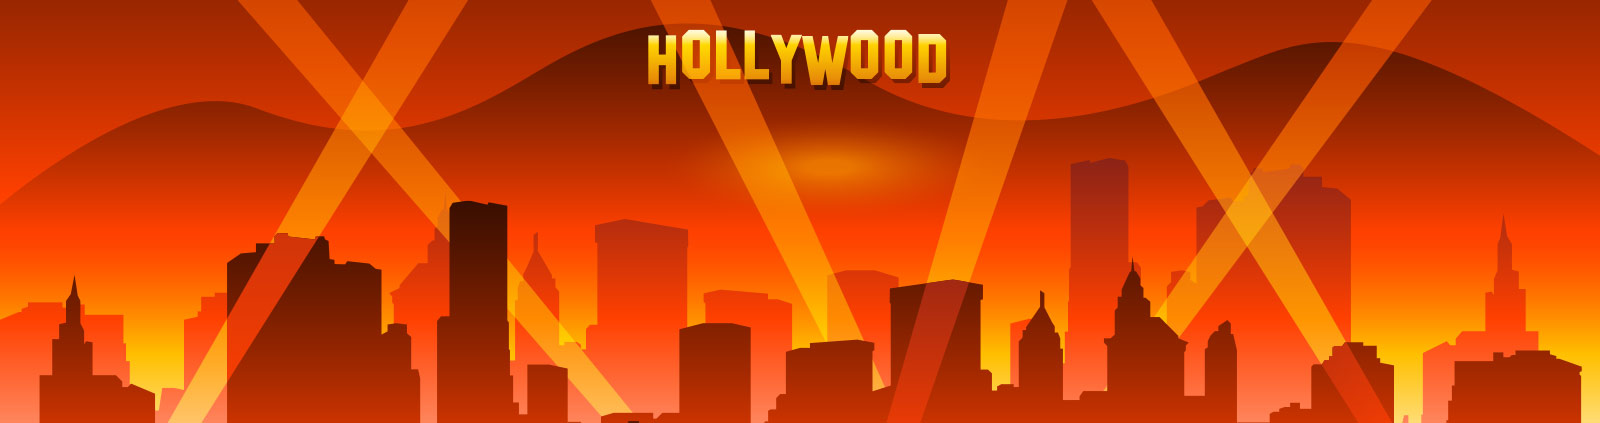 Slider Image - Hollywood